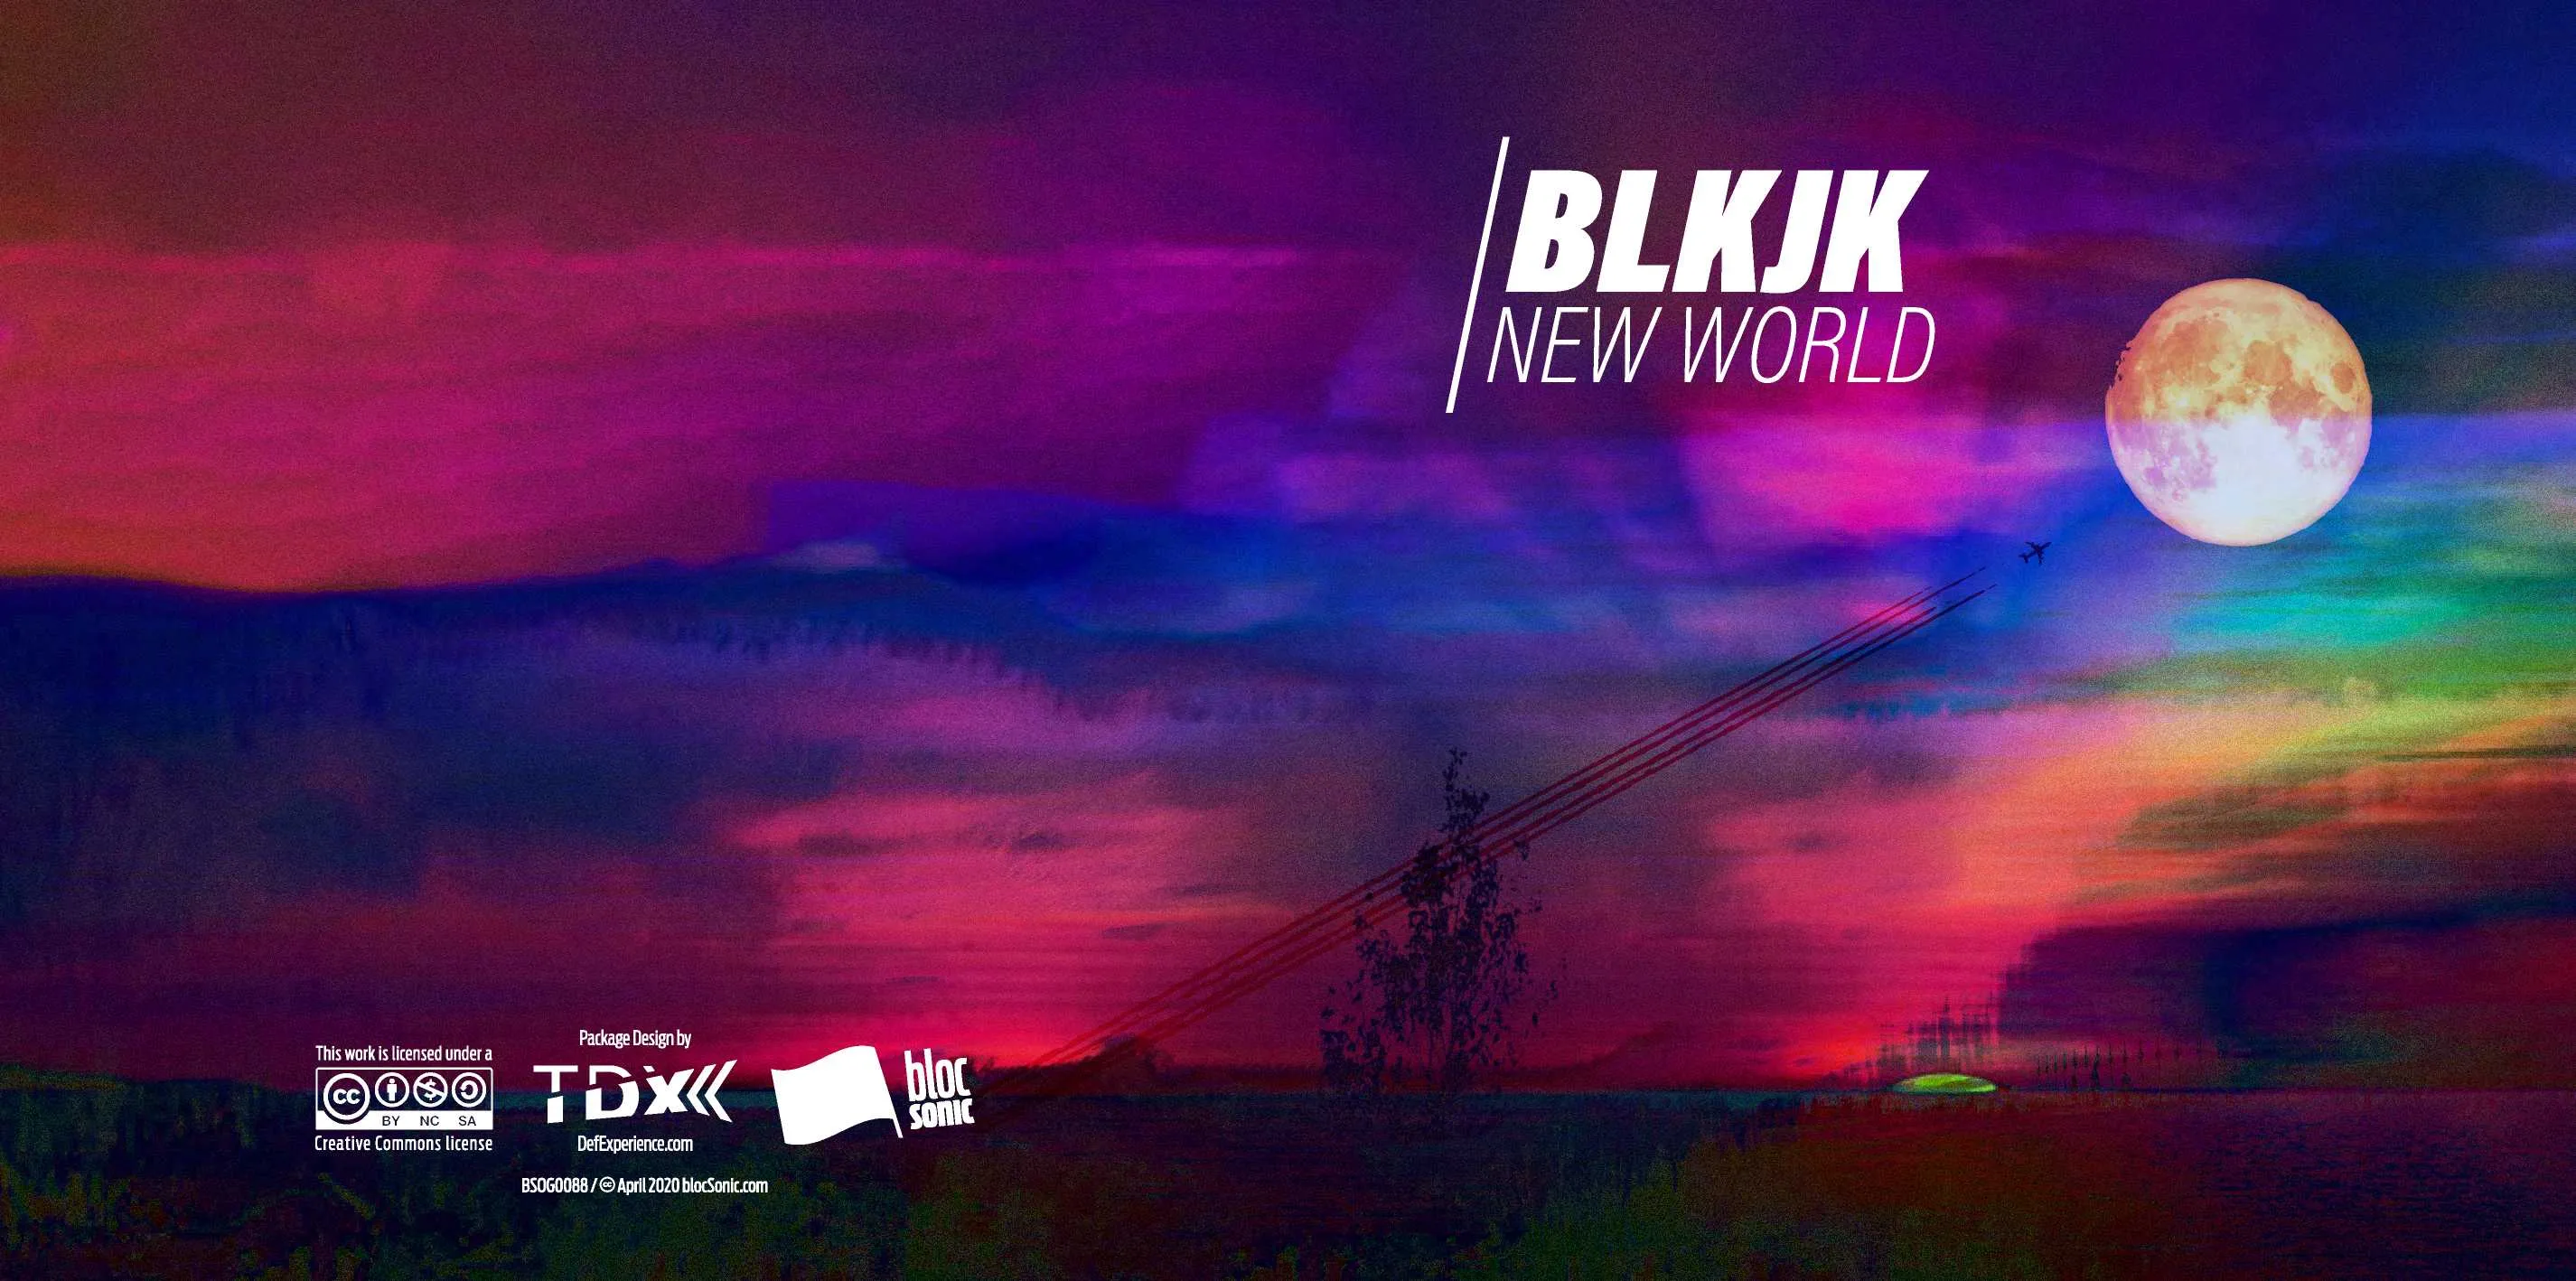 Album insert for “New World” by BLKJK